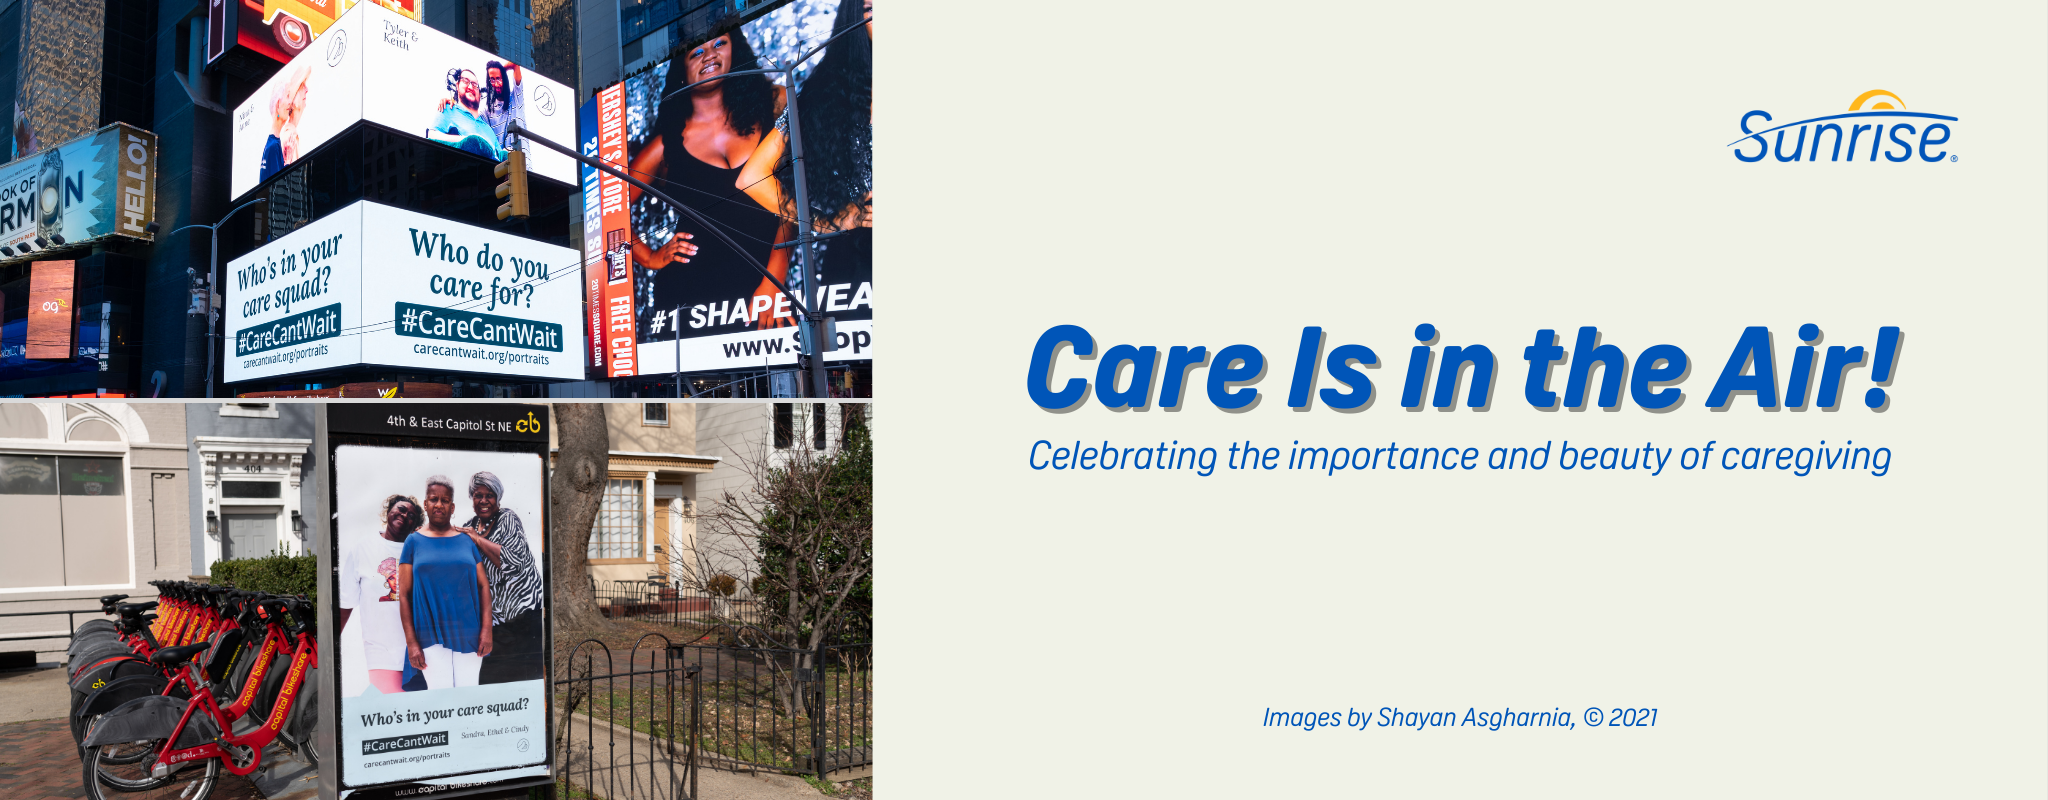 Bìa Blog với tiêu đề "Sự quan tâm đến tận tâm" và một tiêu đề phụ có nội dung "Tôn vinh tầm quan trọng và vẻ đẹp của việc chăm sóc." Bên trái có hai hình ảnh quảng cáo ở Quảng trường Thời đại và Washington DC. Các bức ảnh chụp những người cùng với người chăm sóc của họ.